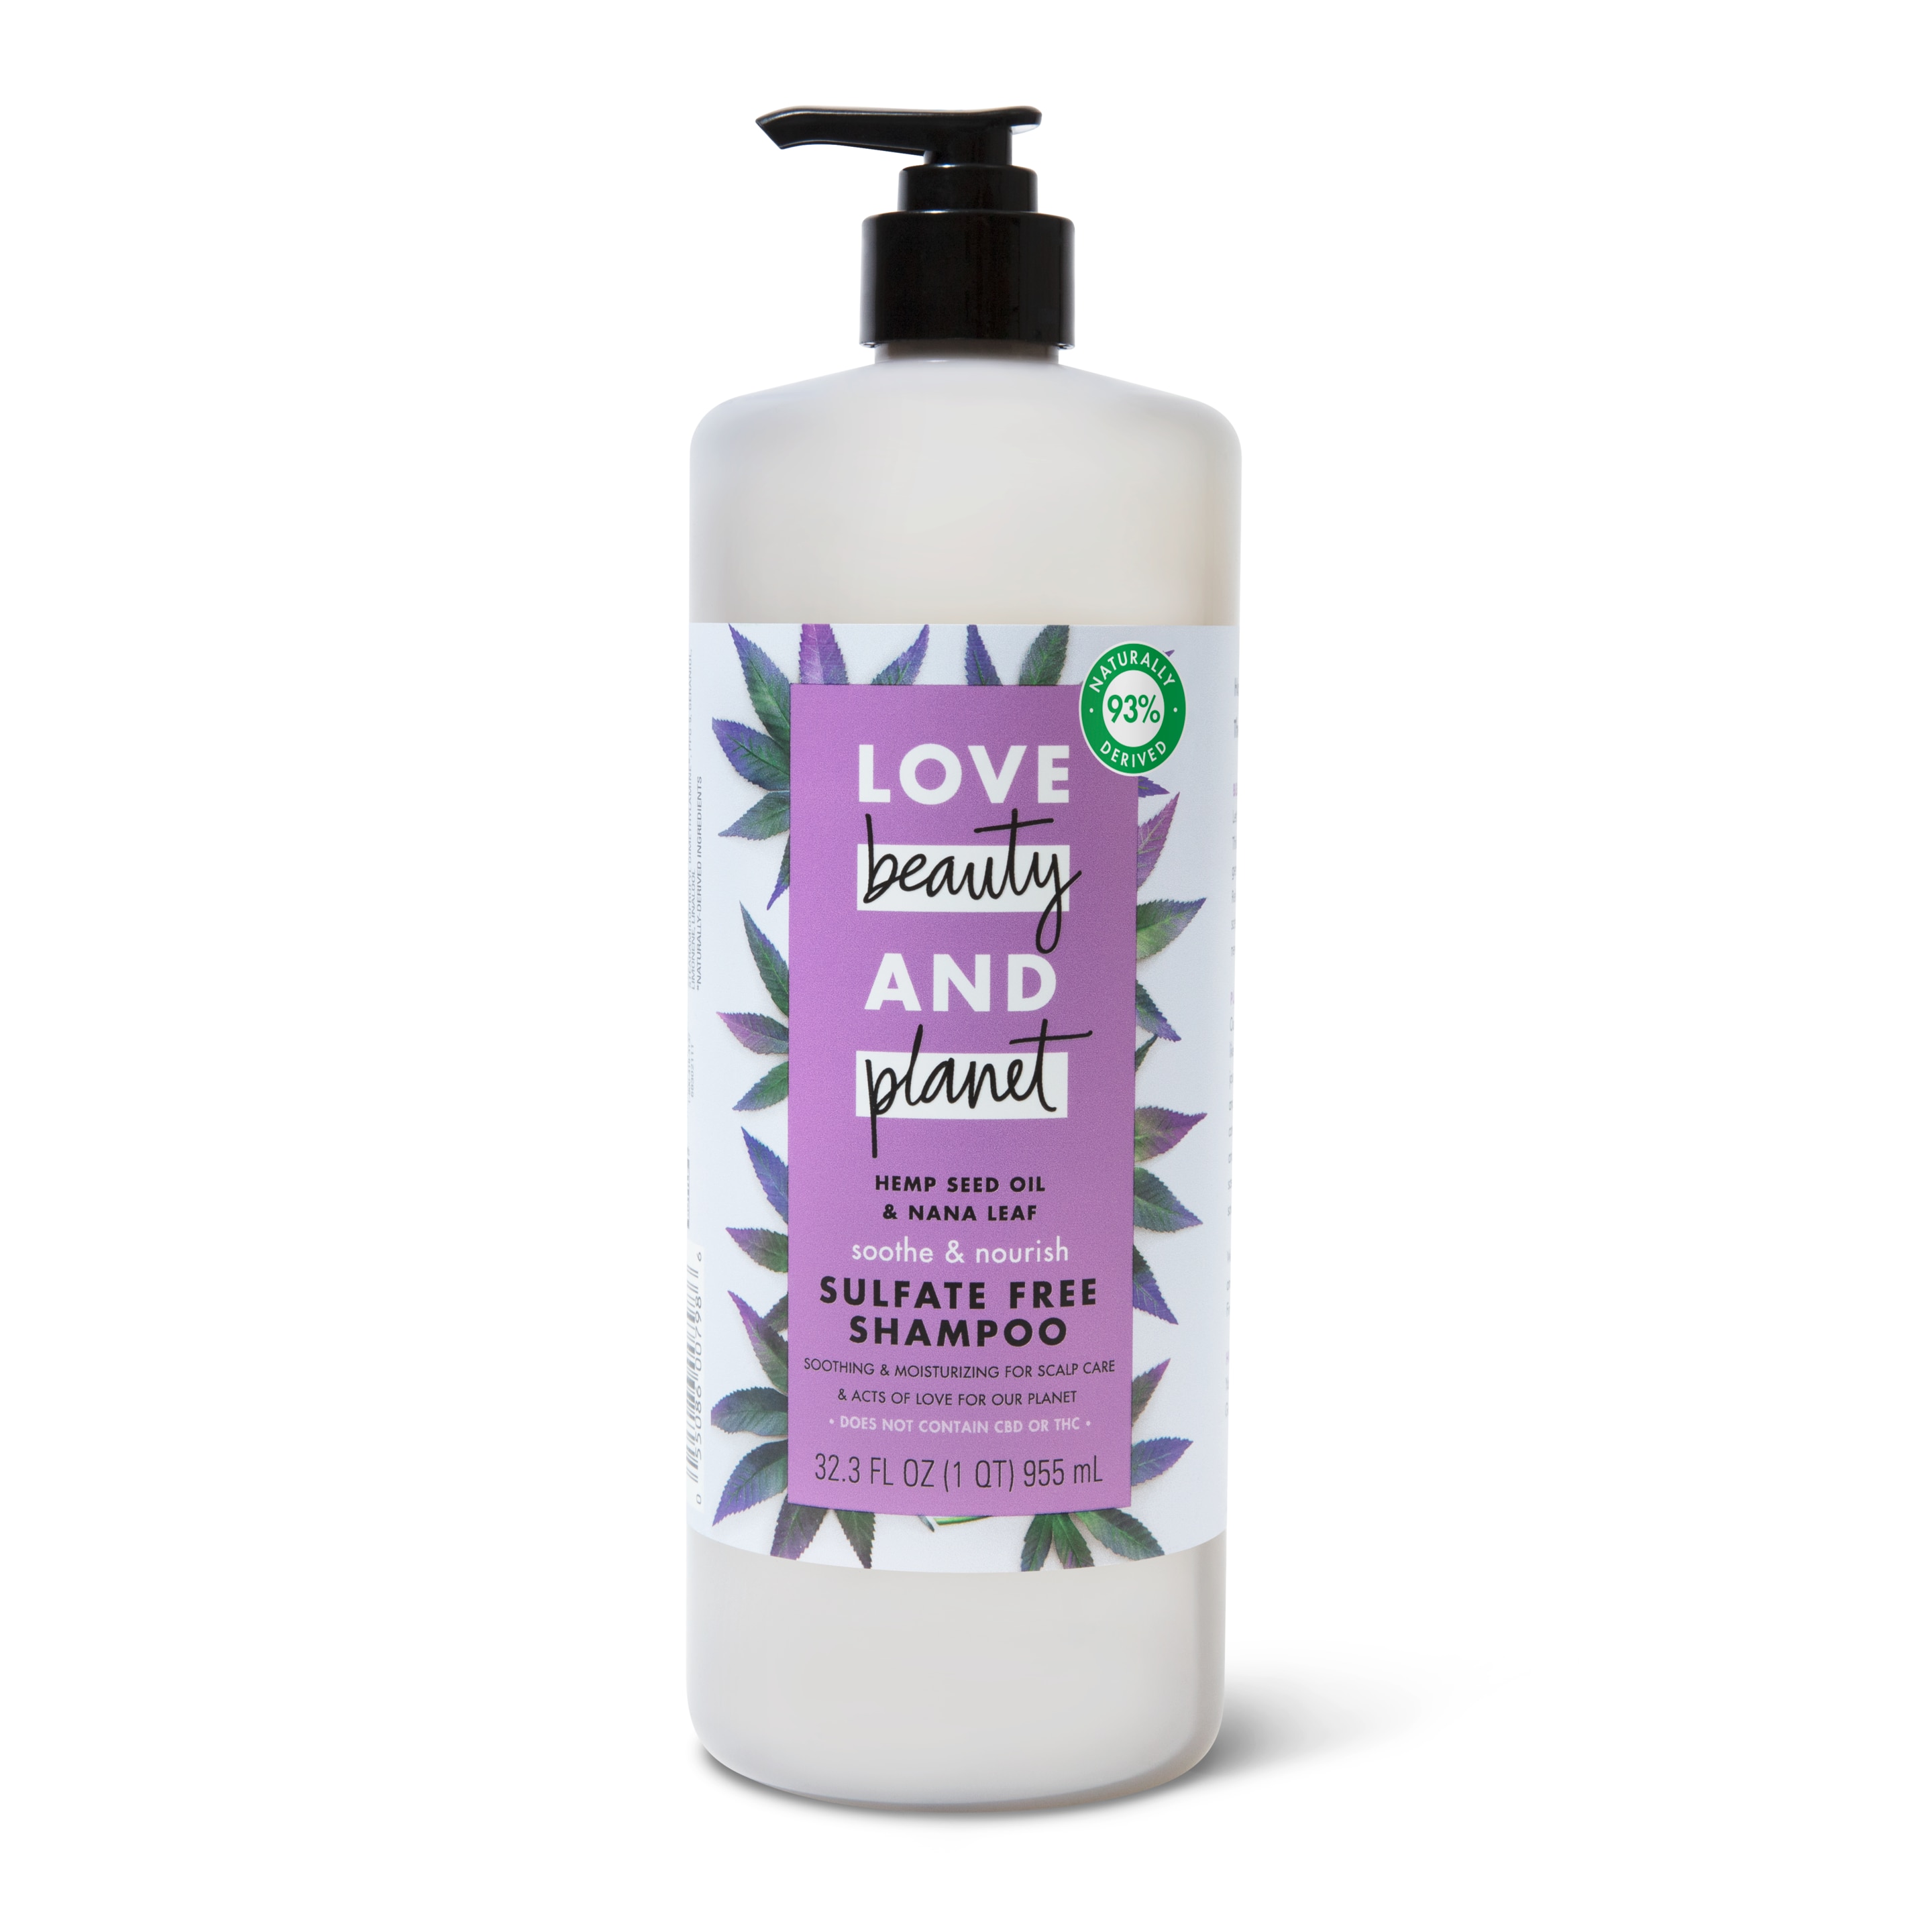 sulfate-free hemp seed oil & nana leaf shampoo